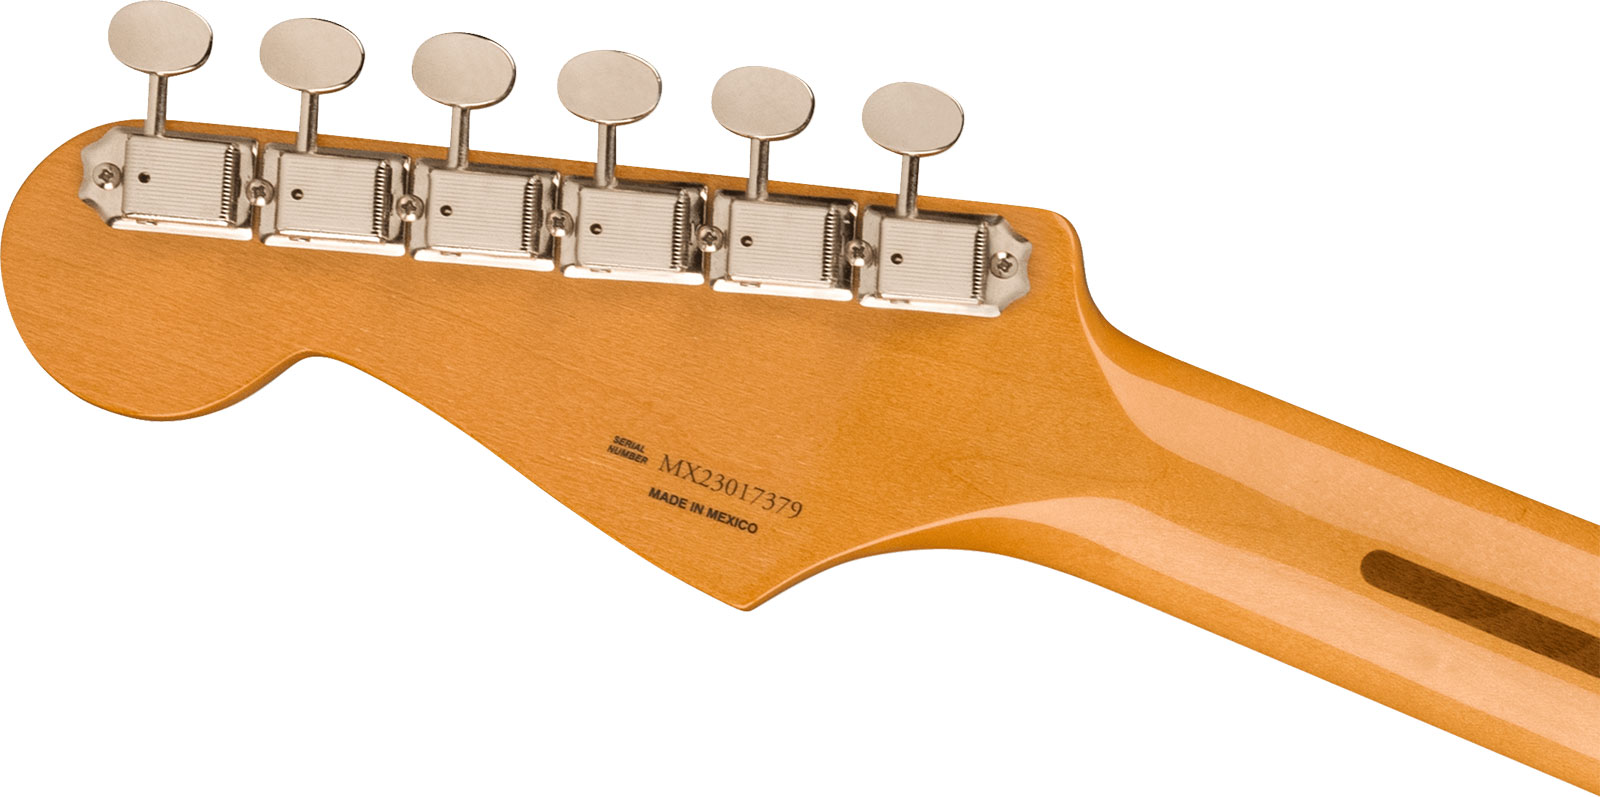 Fender Strat 50s Vintera 2 Mex 3s Trem Mn - 2-color Sunburst - Str shape electric guitar - Variation 3